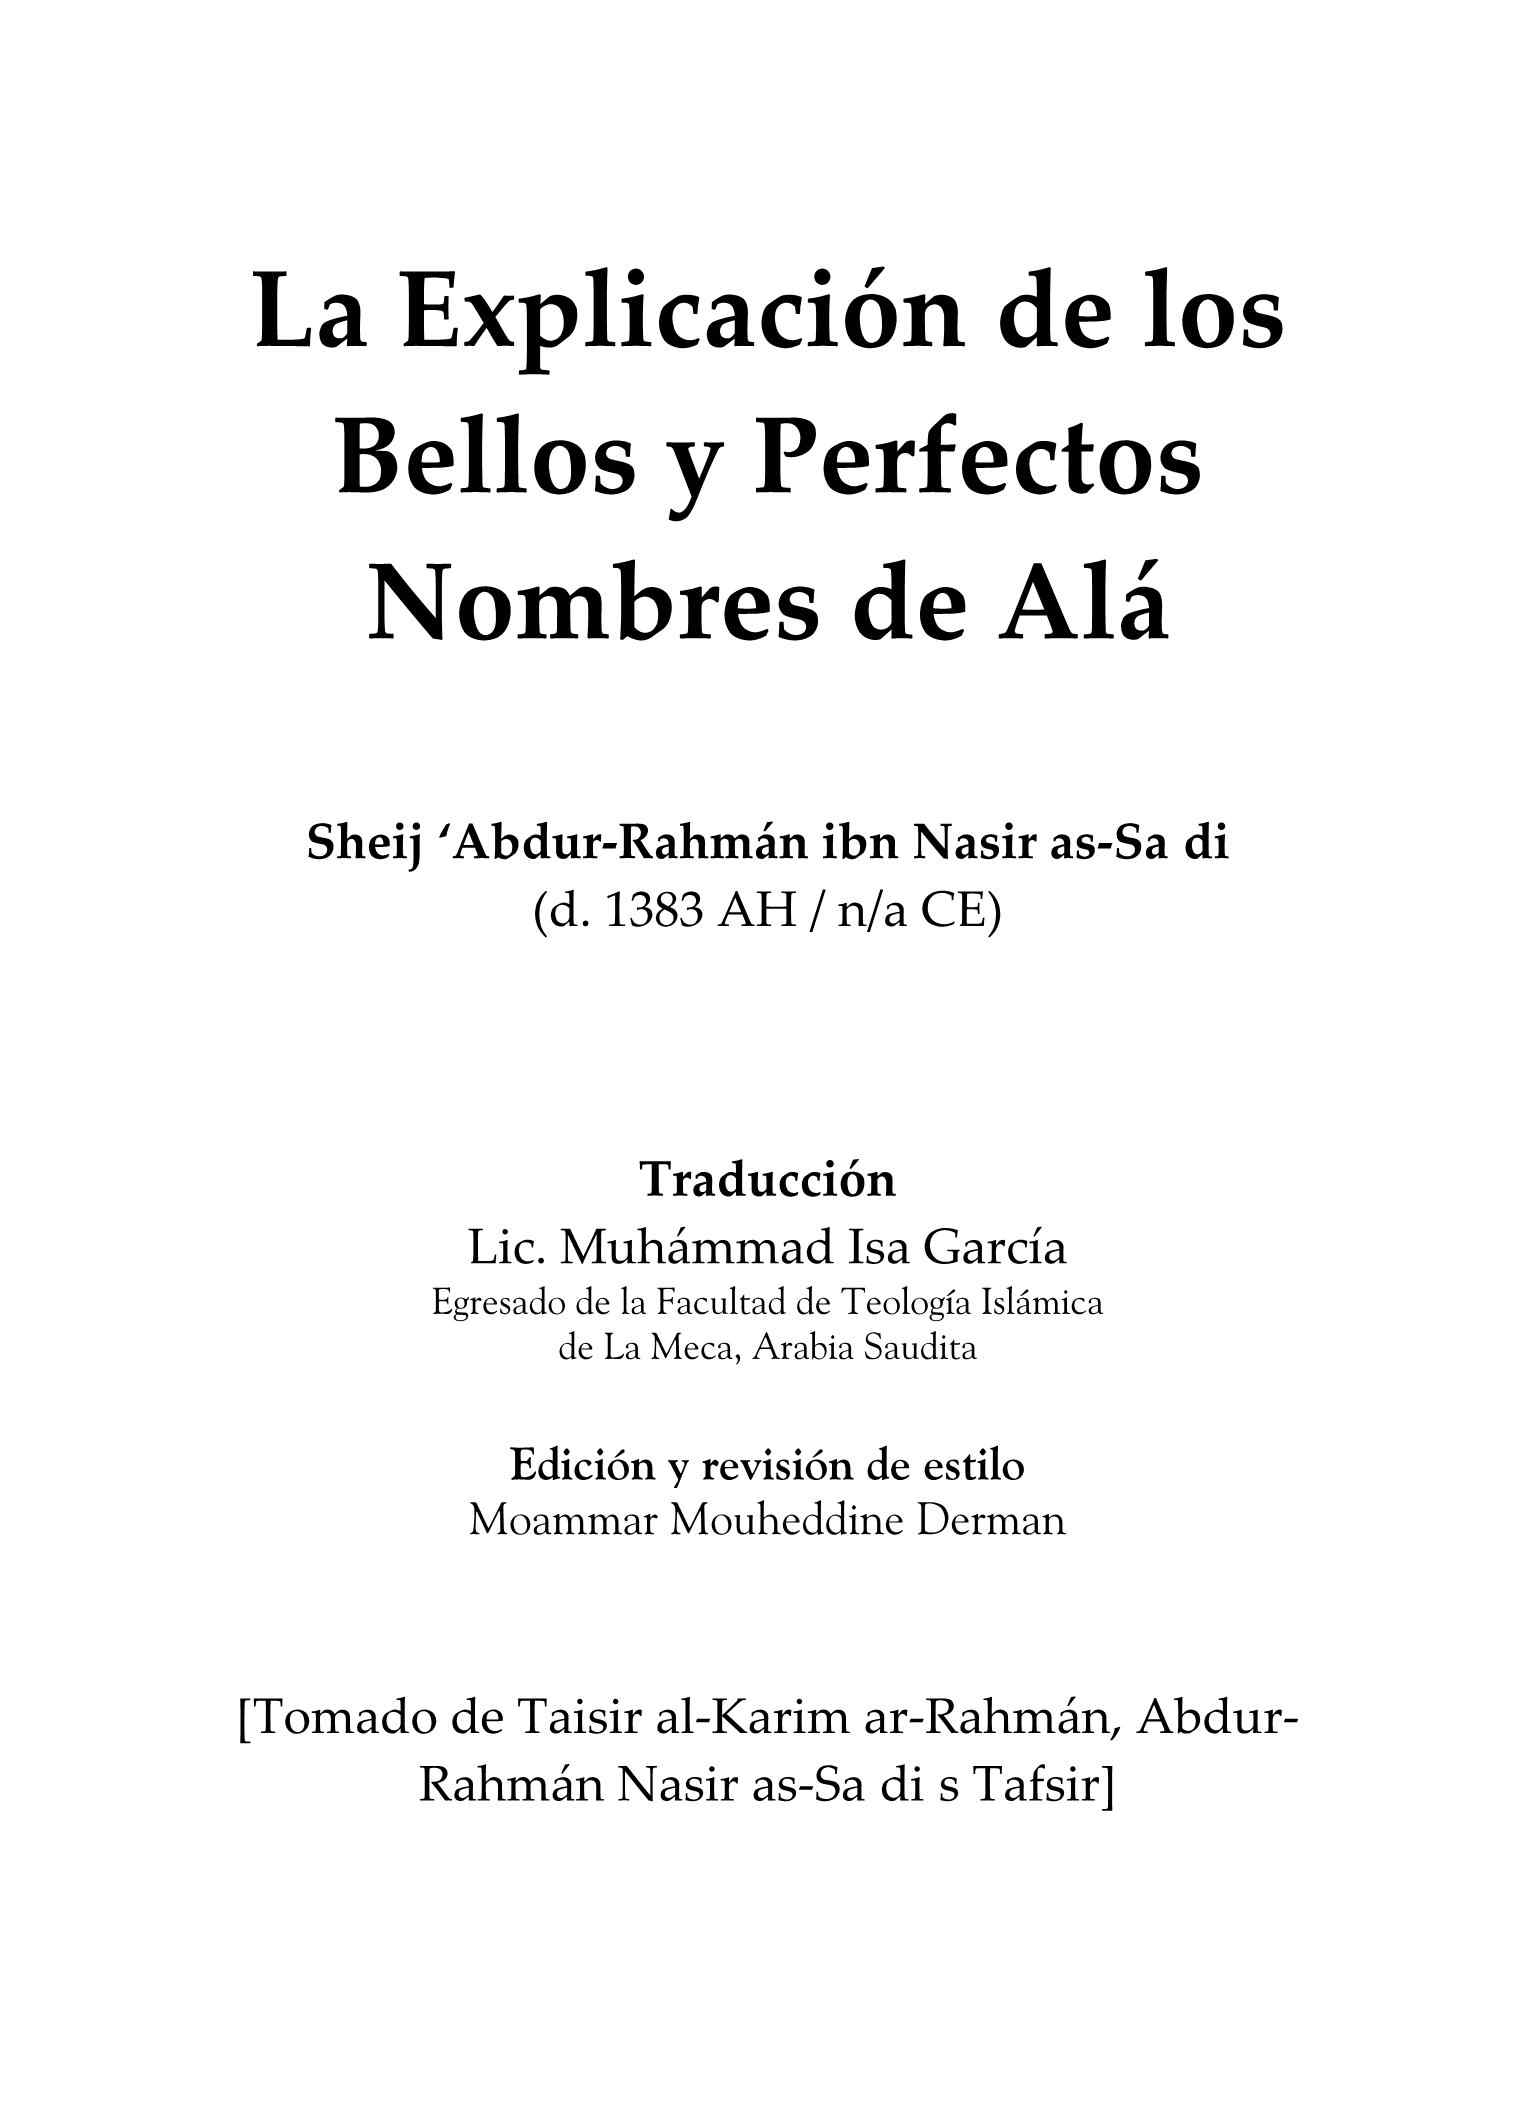 إسباني - تفسير أسماء الله الحسنى - La explicación de los bellos y perfectos nombres de Alá.pdf, 72-Sayfa 